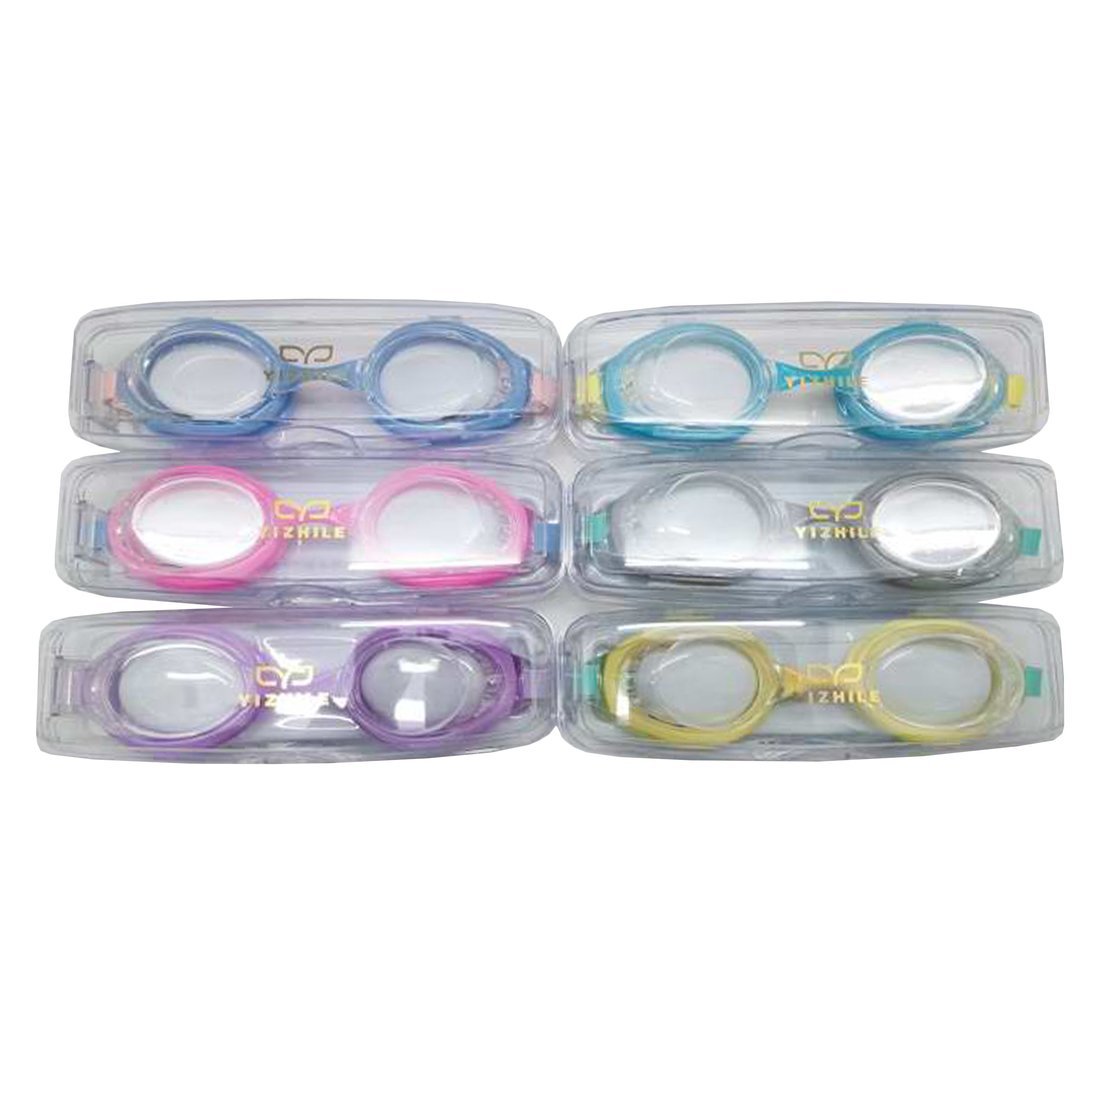 очки для плавания детские в ассорт. цвета 6 видов.